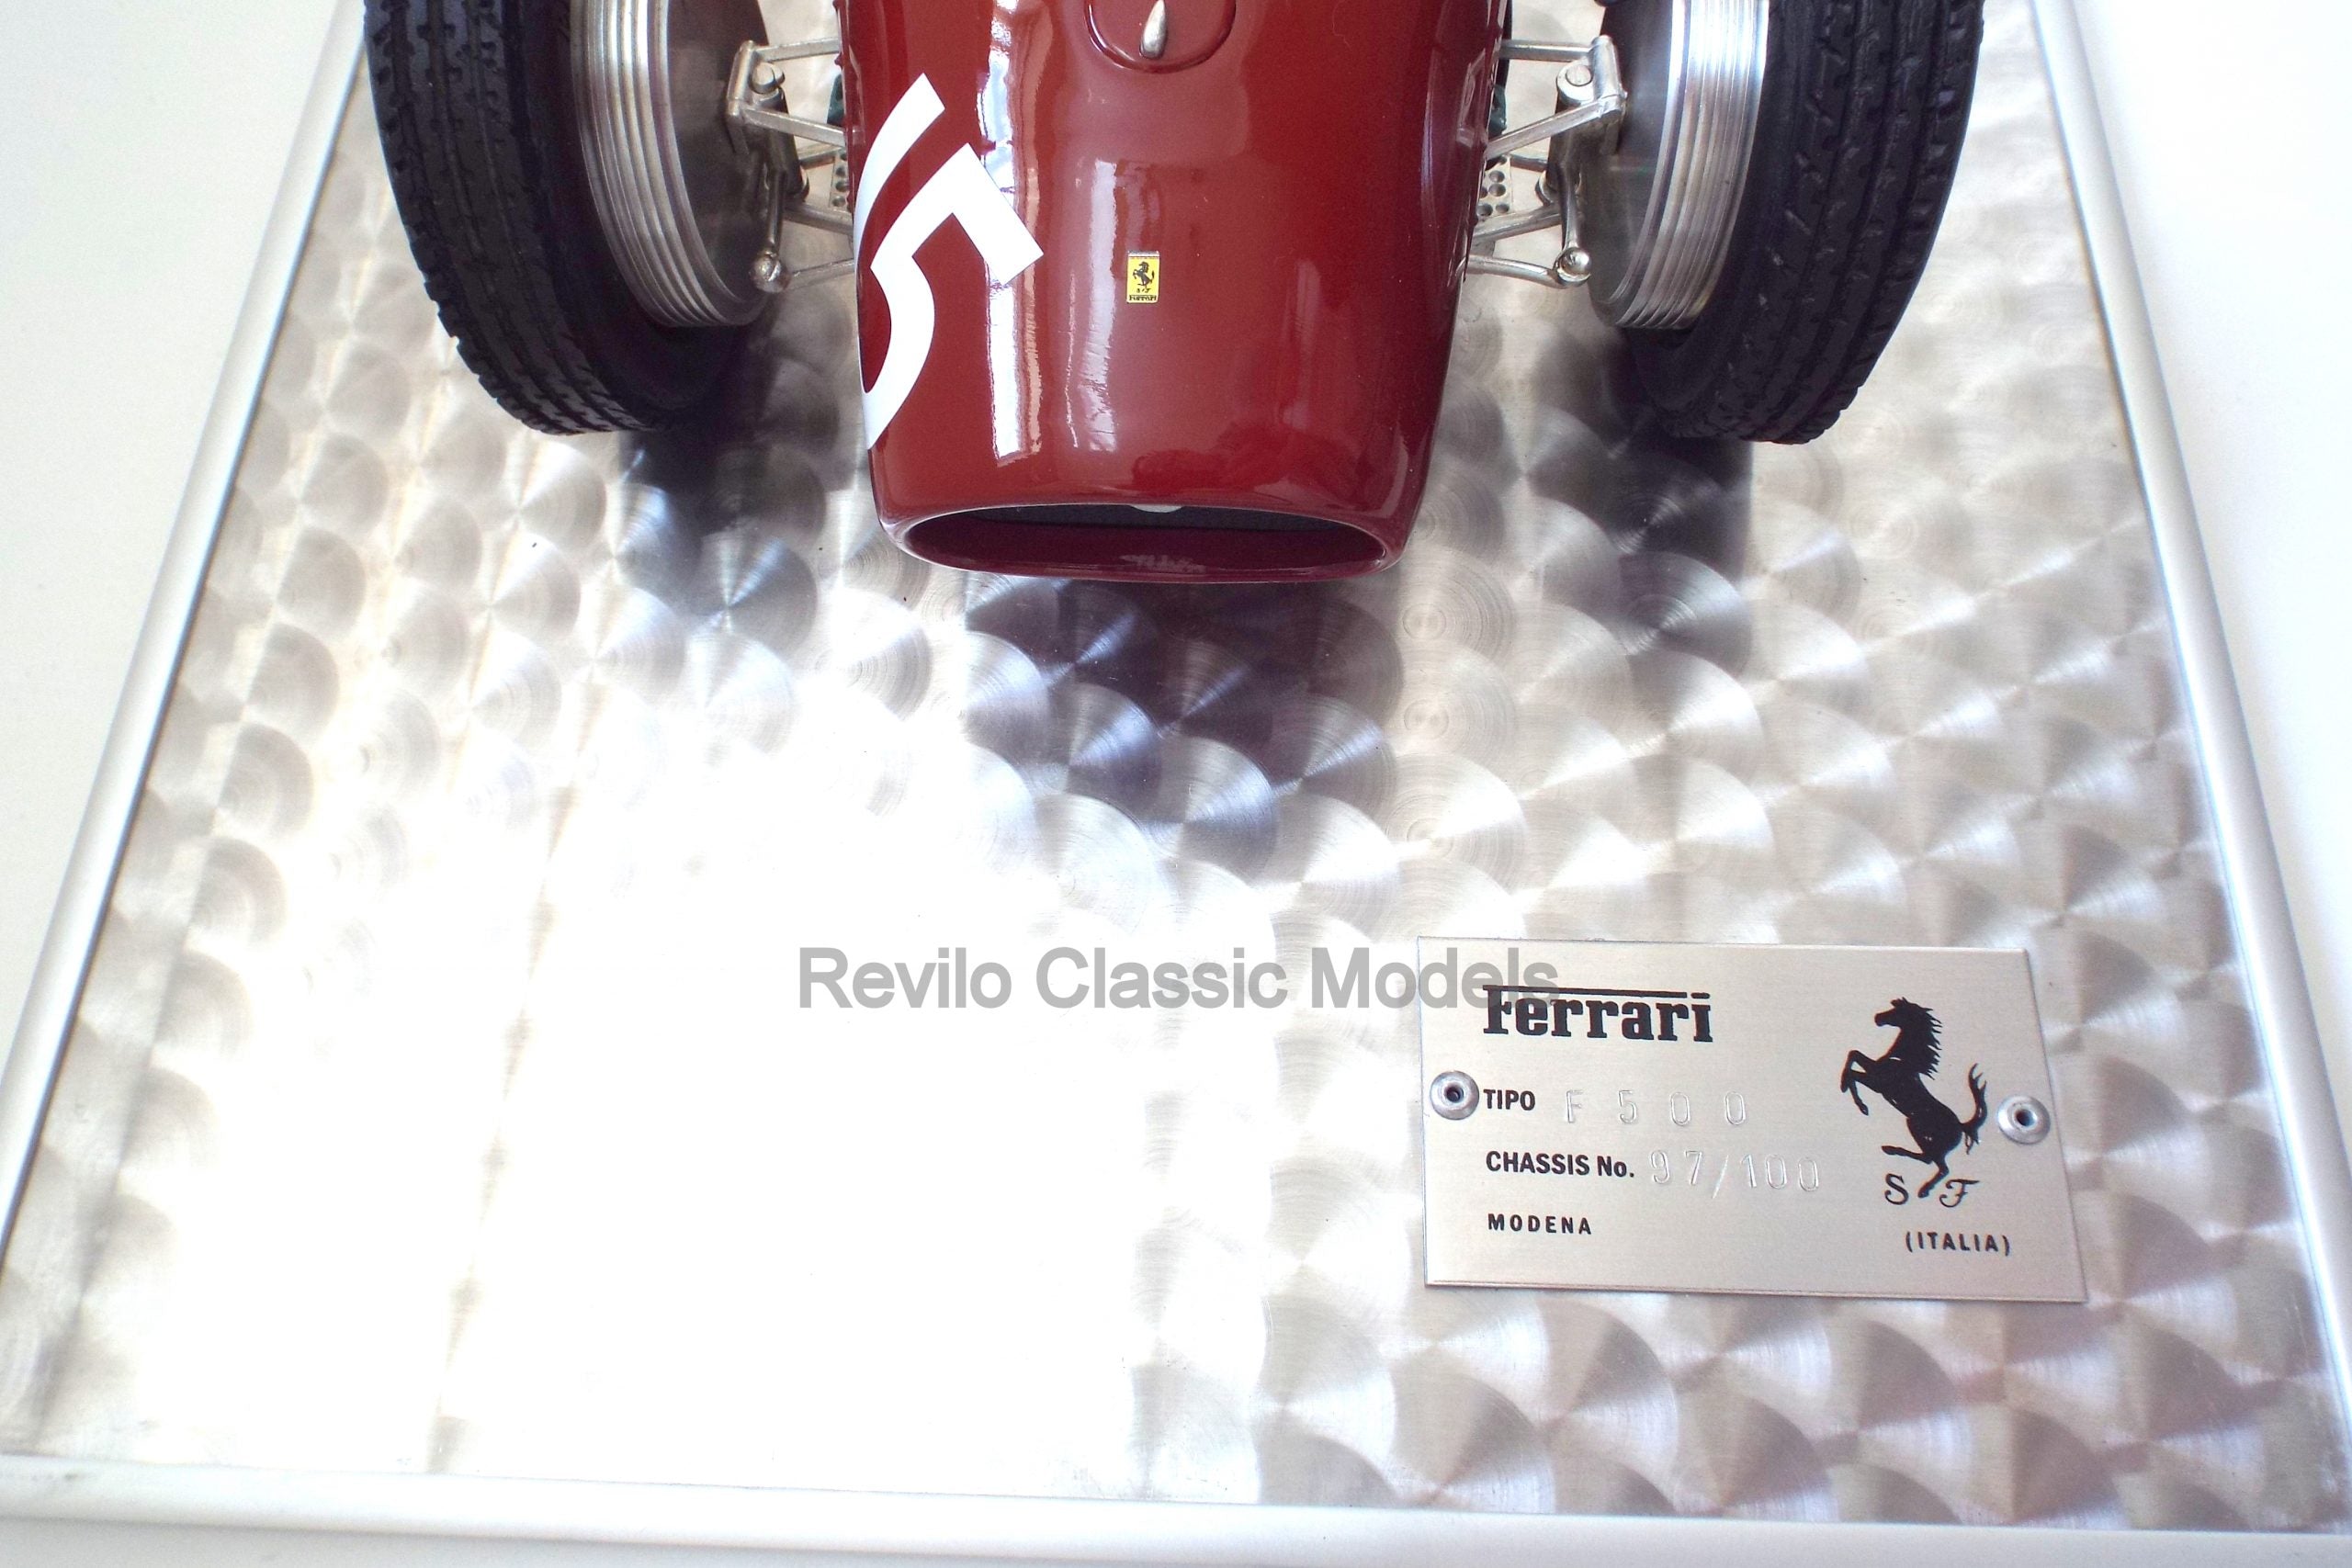 Ferrari Tipo 500 F2 1952 1:8 scale model